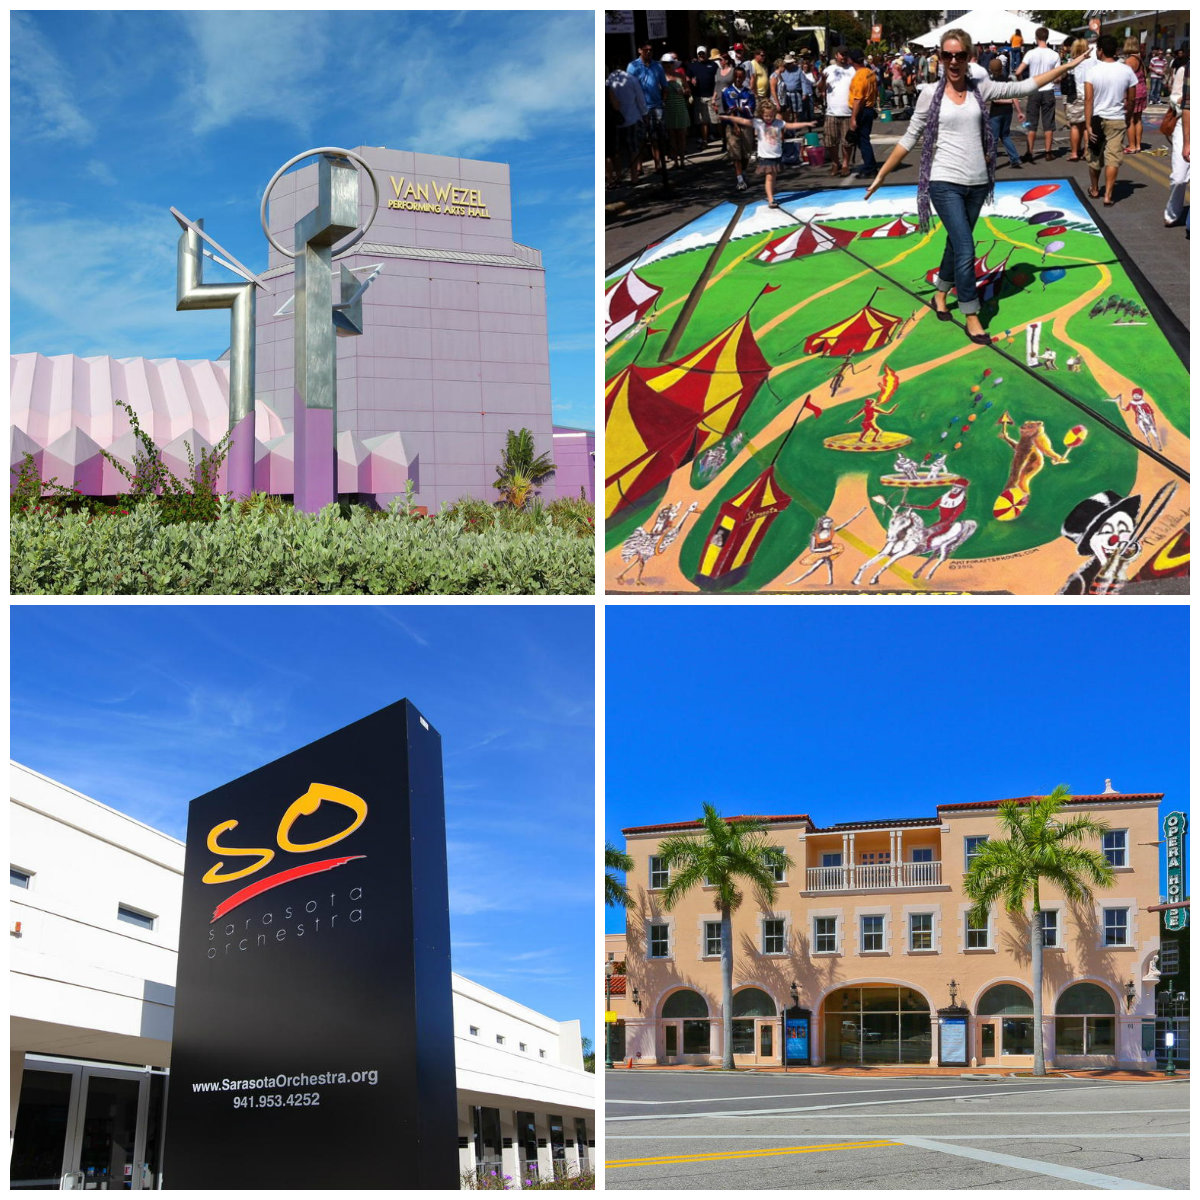 Sarasota's Arts & Cultural Events for 201516 Season